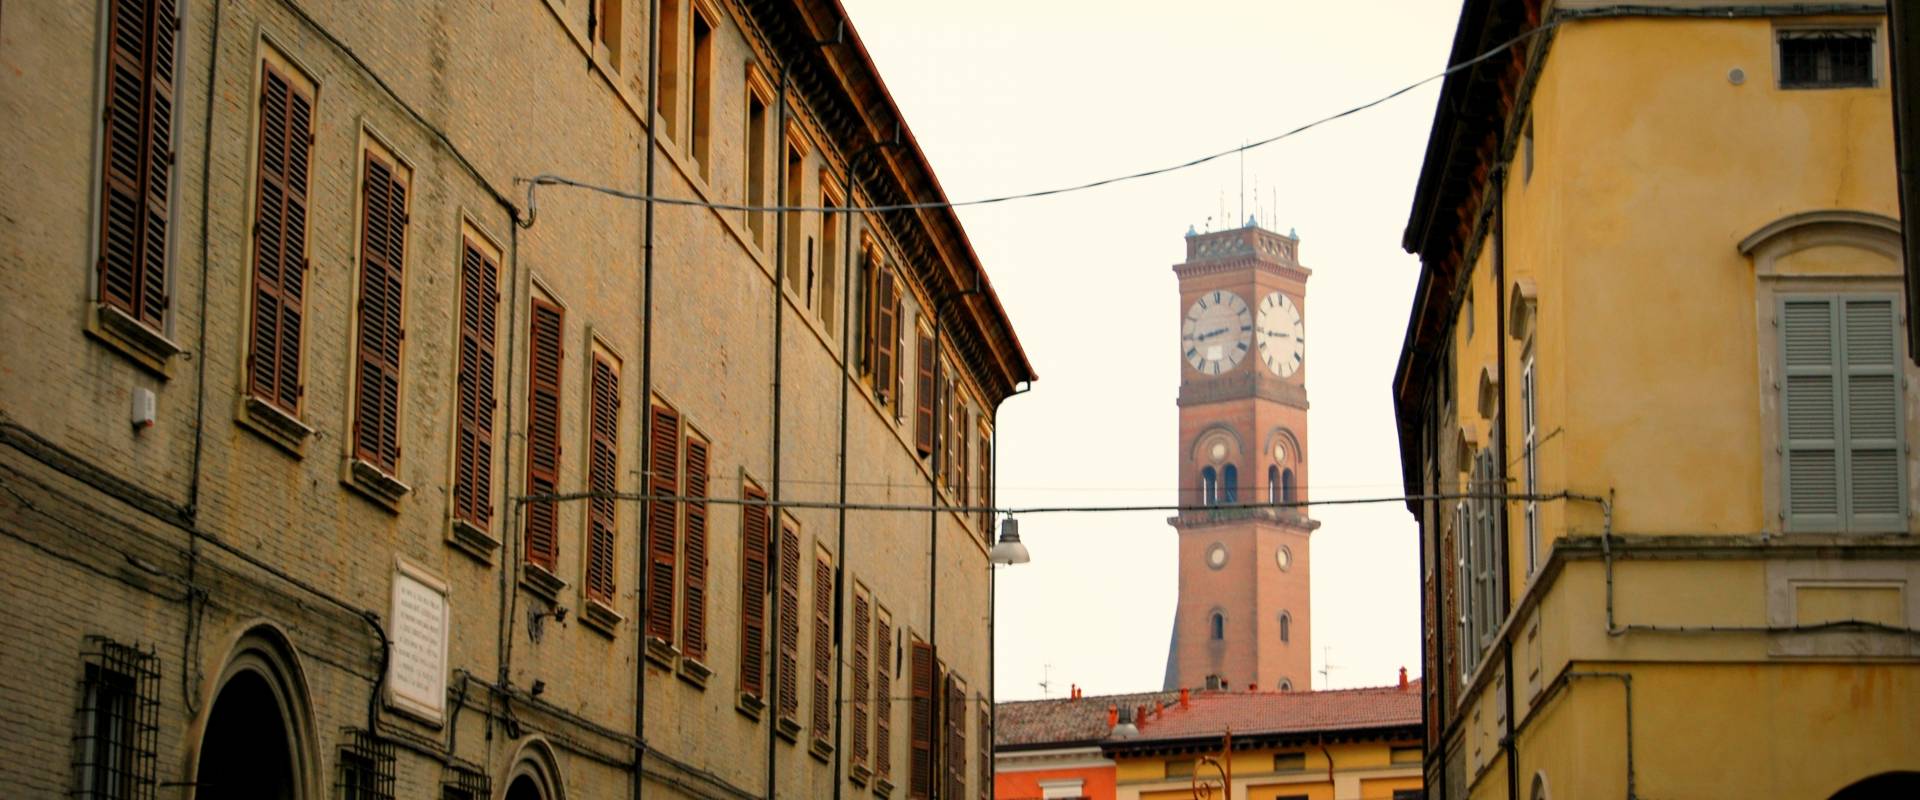 La Torre Civica vista da Corso Garibaldi foto di Chiari86